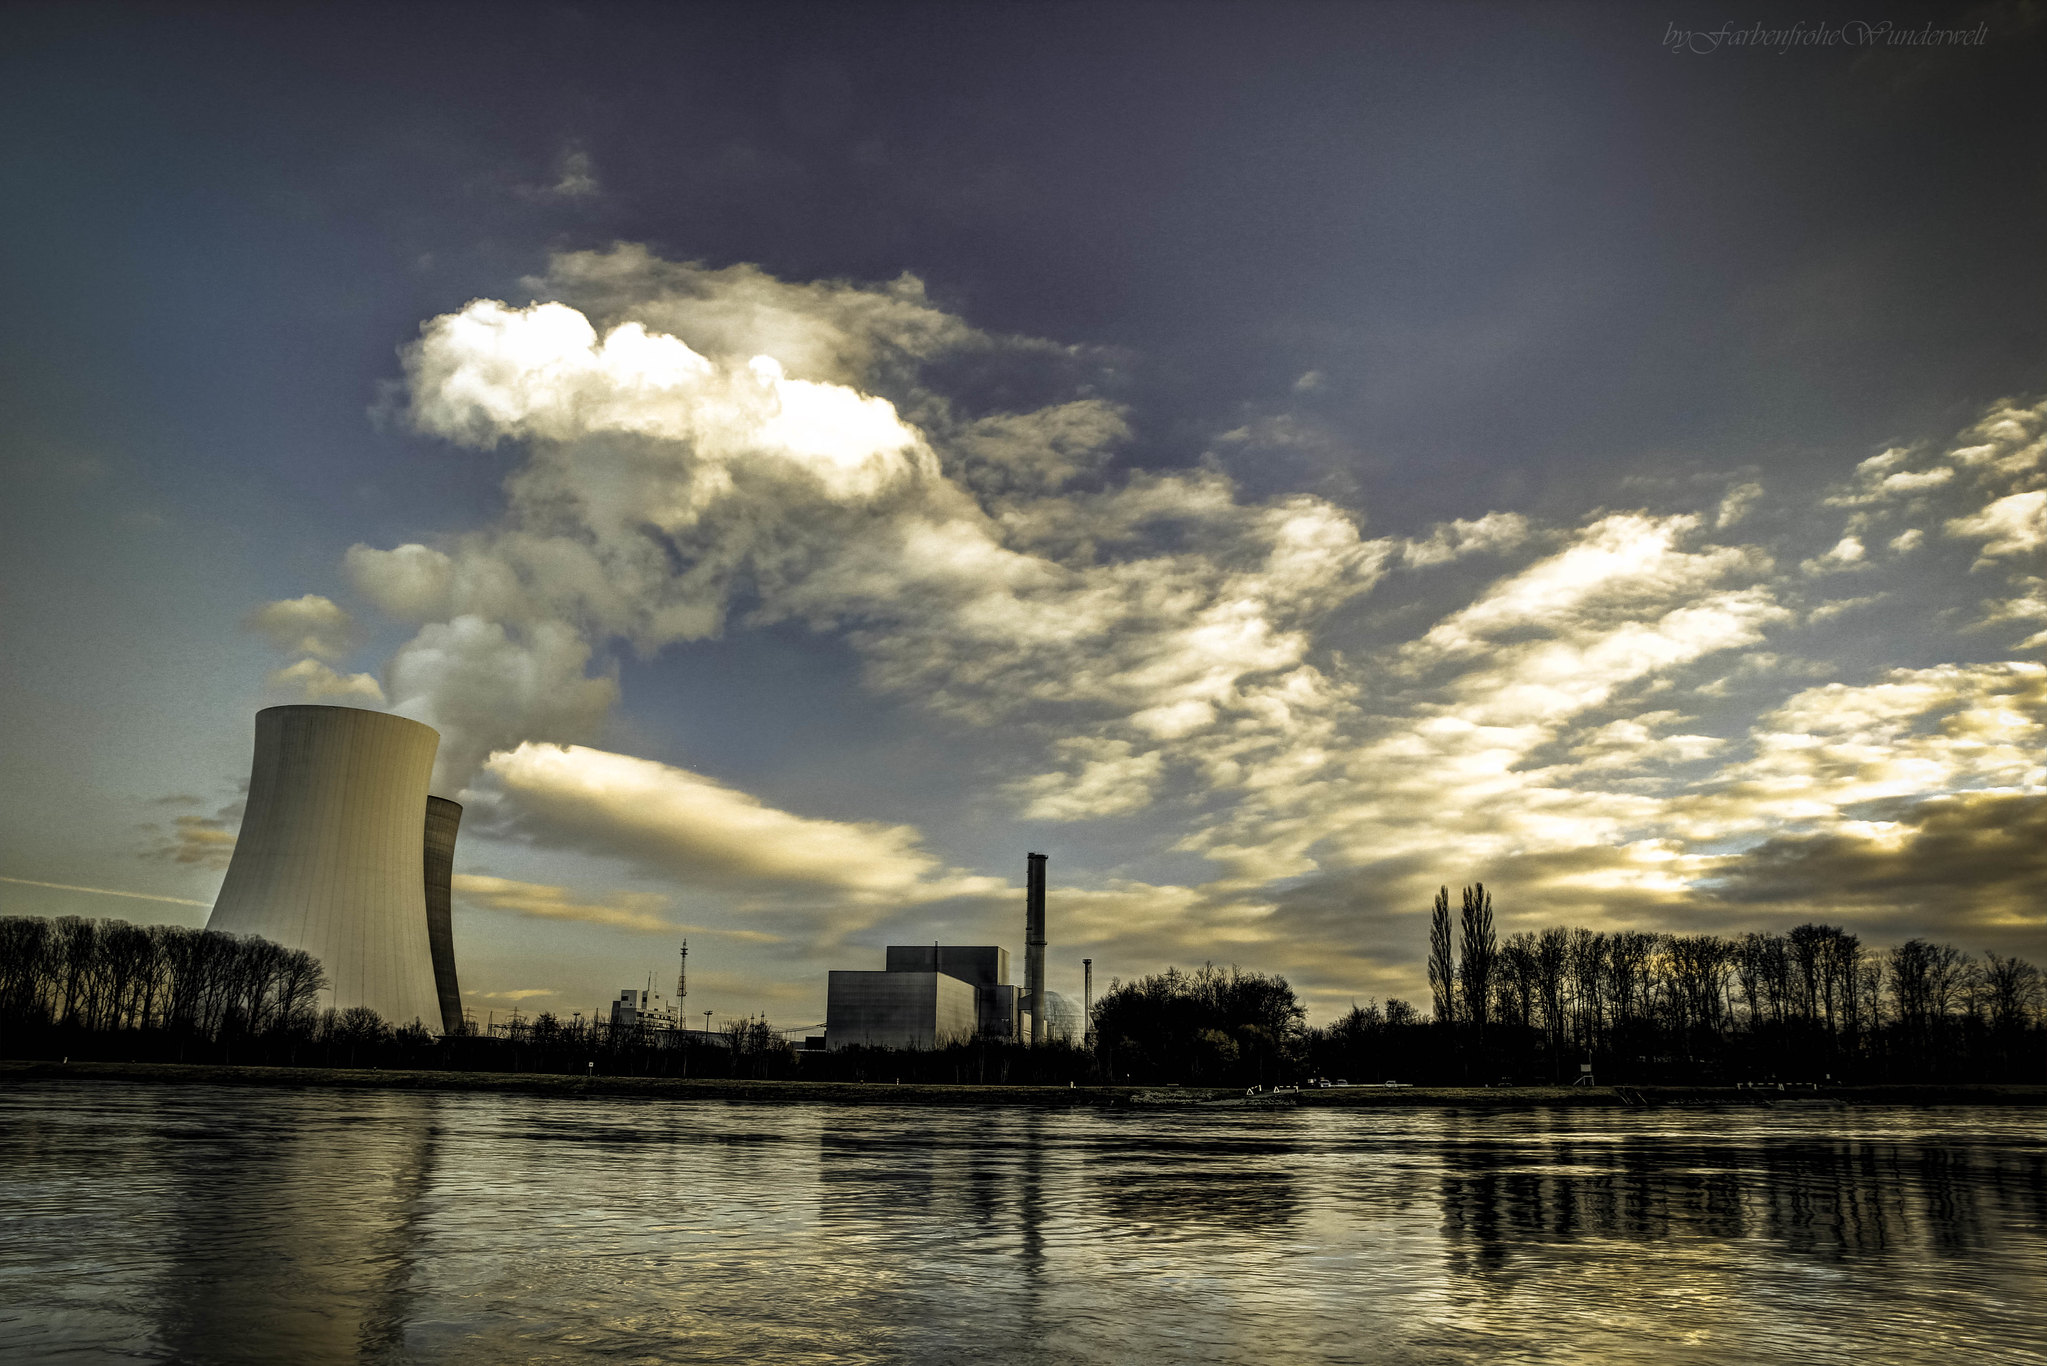 Bild eines Atomkraftwerks aus dessen Kühltürmen Wasserdampf aufsteigt. Das Dampf wird von der Sonne angestrahlt.